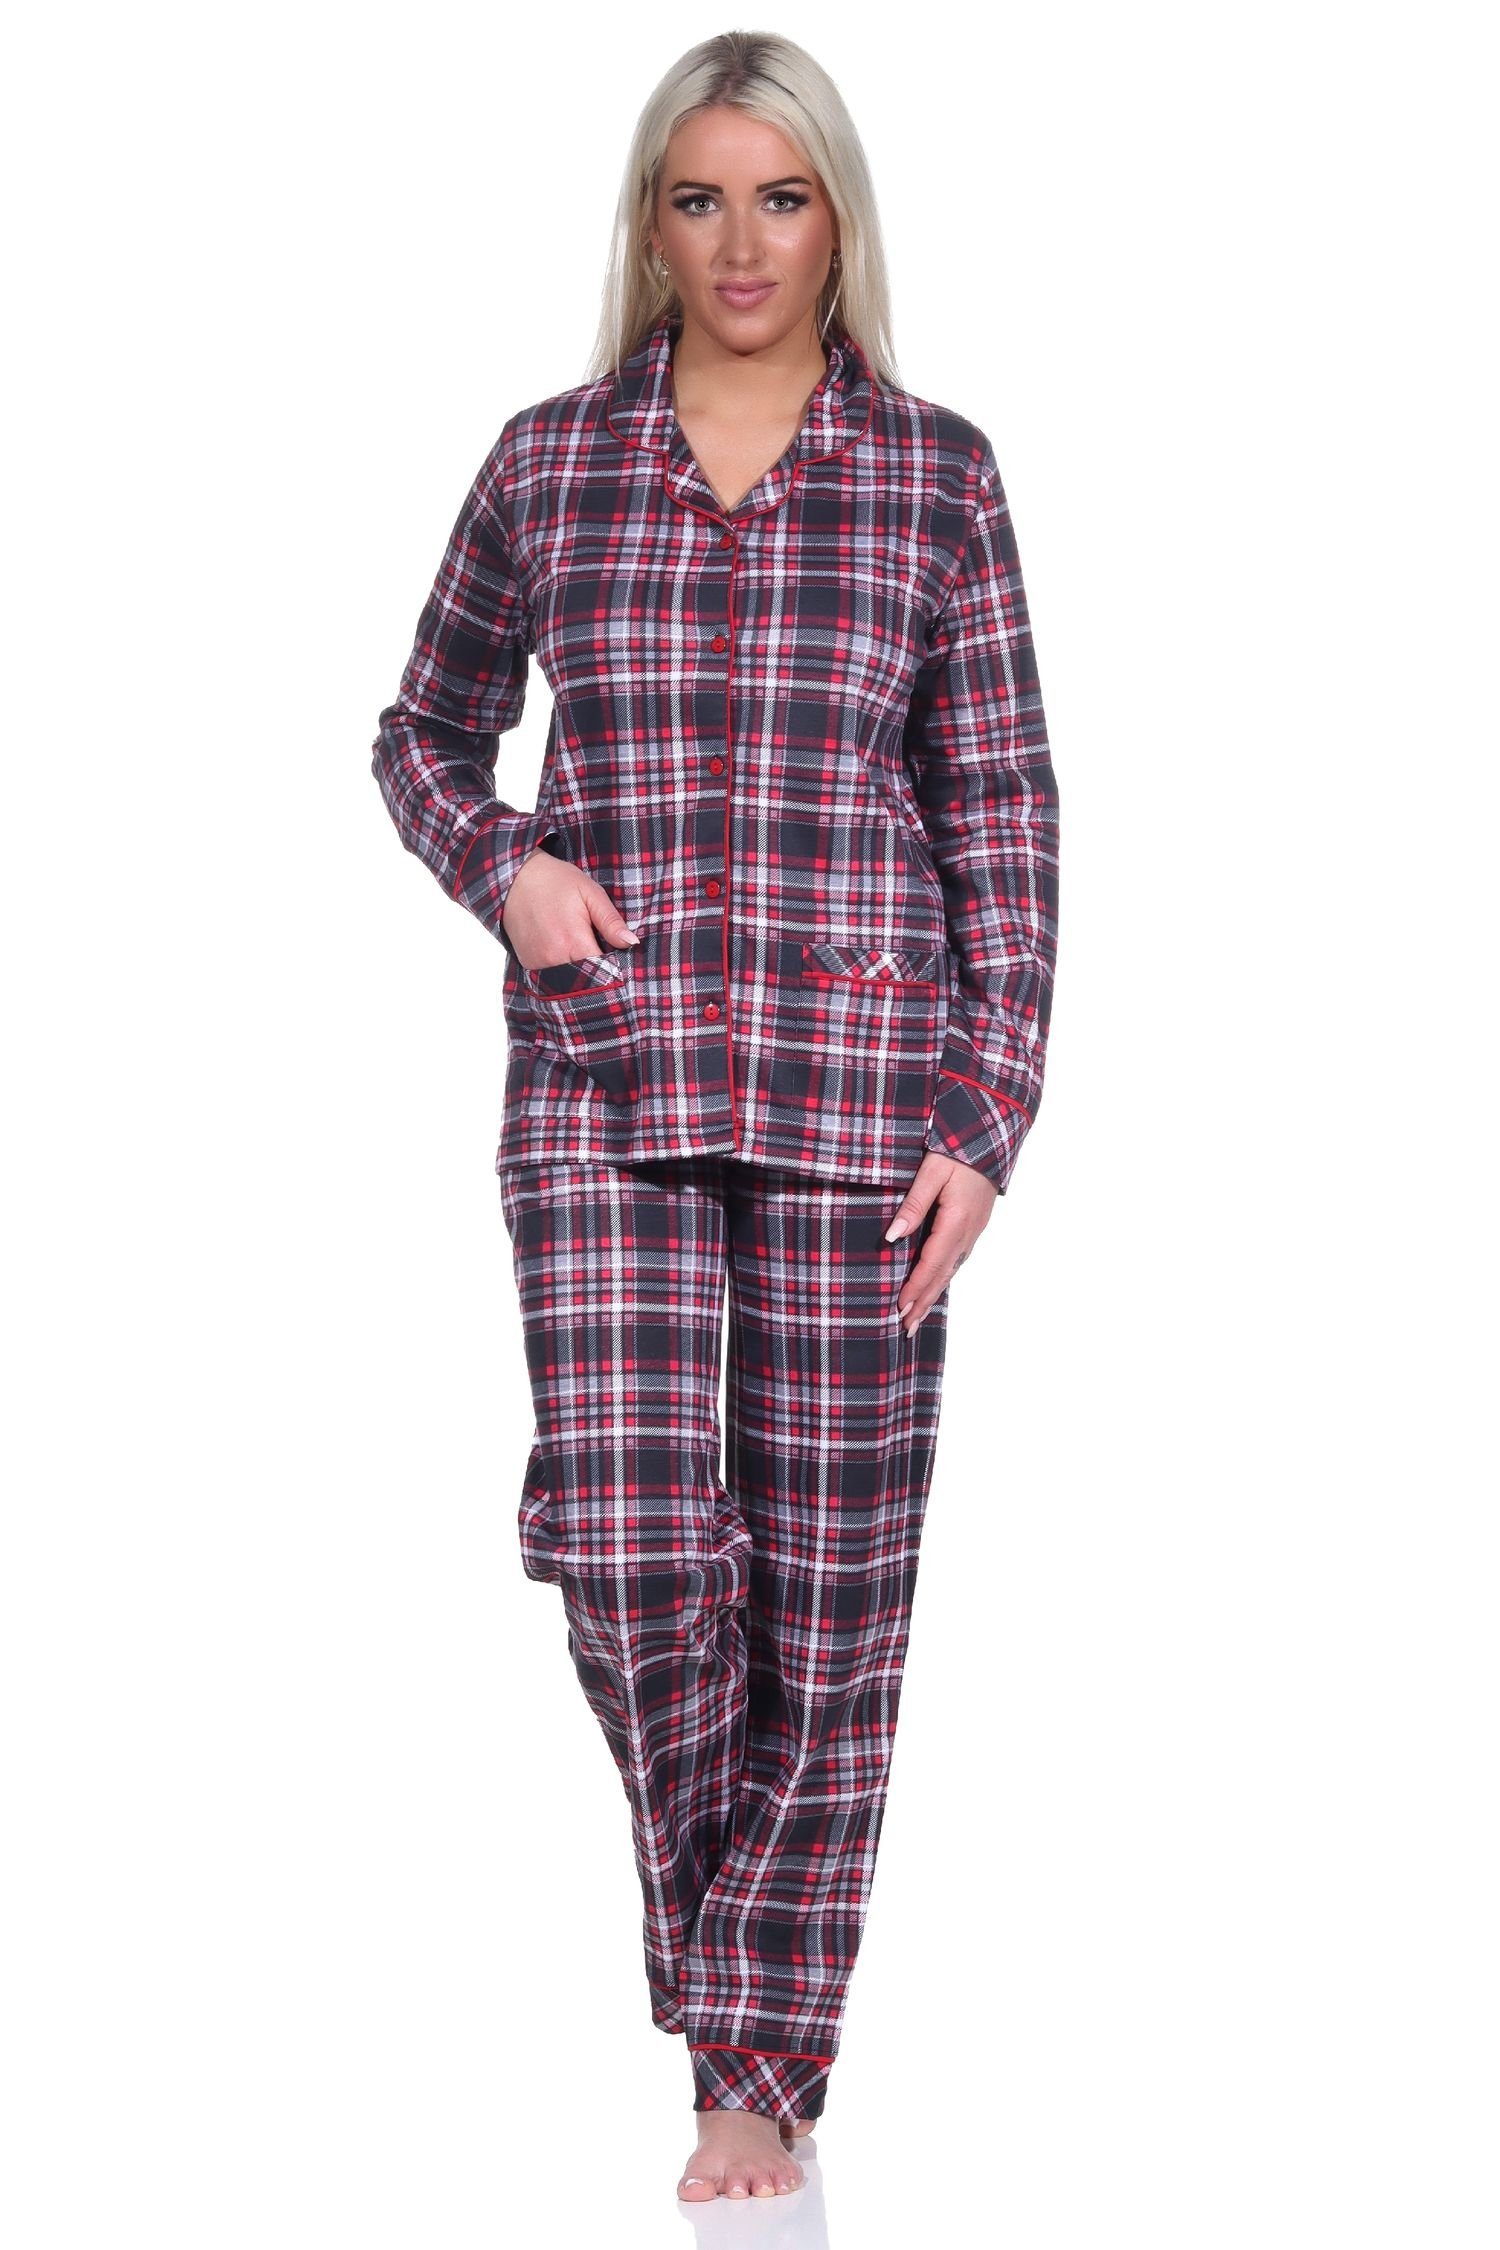 zum in Normann durchknöpfen Pyjama Damen in Qualität Pyjama Optik Karo Jersey Single